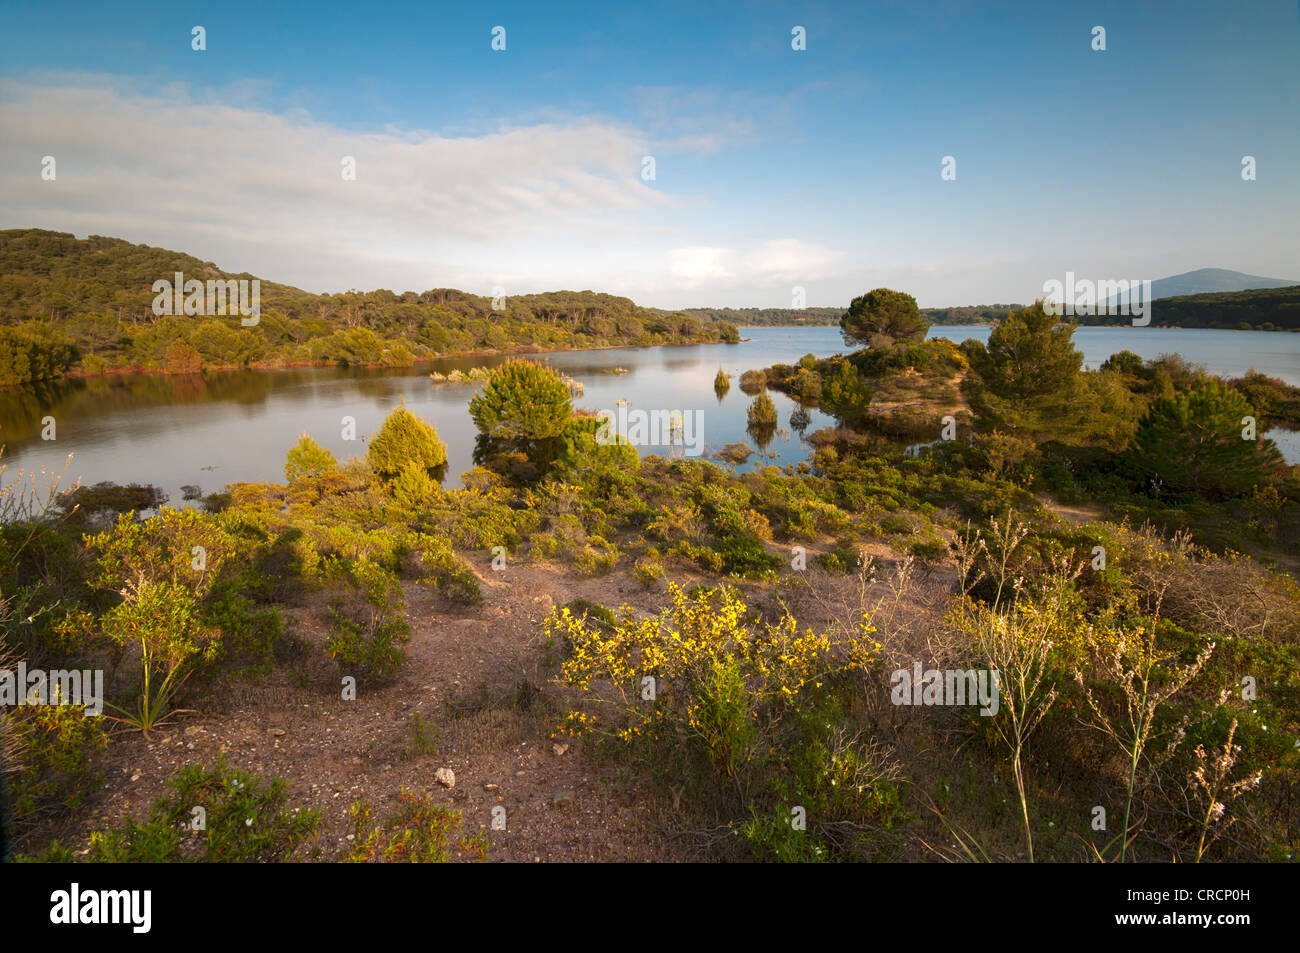 Lago Baratz, der einzige natürliche Süßwassersee in Sardinien, Alghero, Sardinien, Italien, Europa Stockfoto